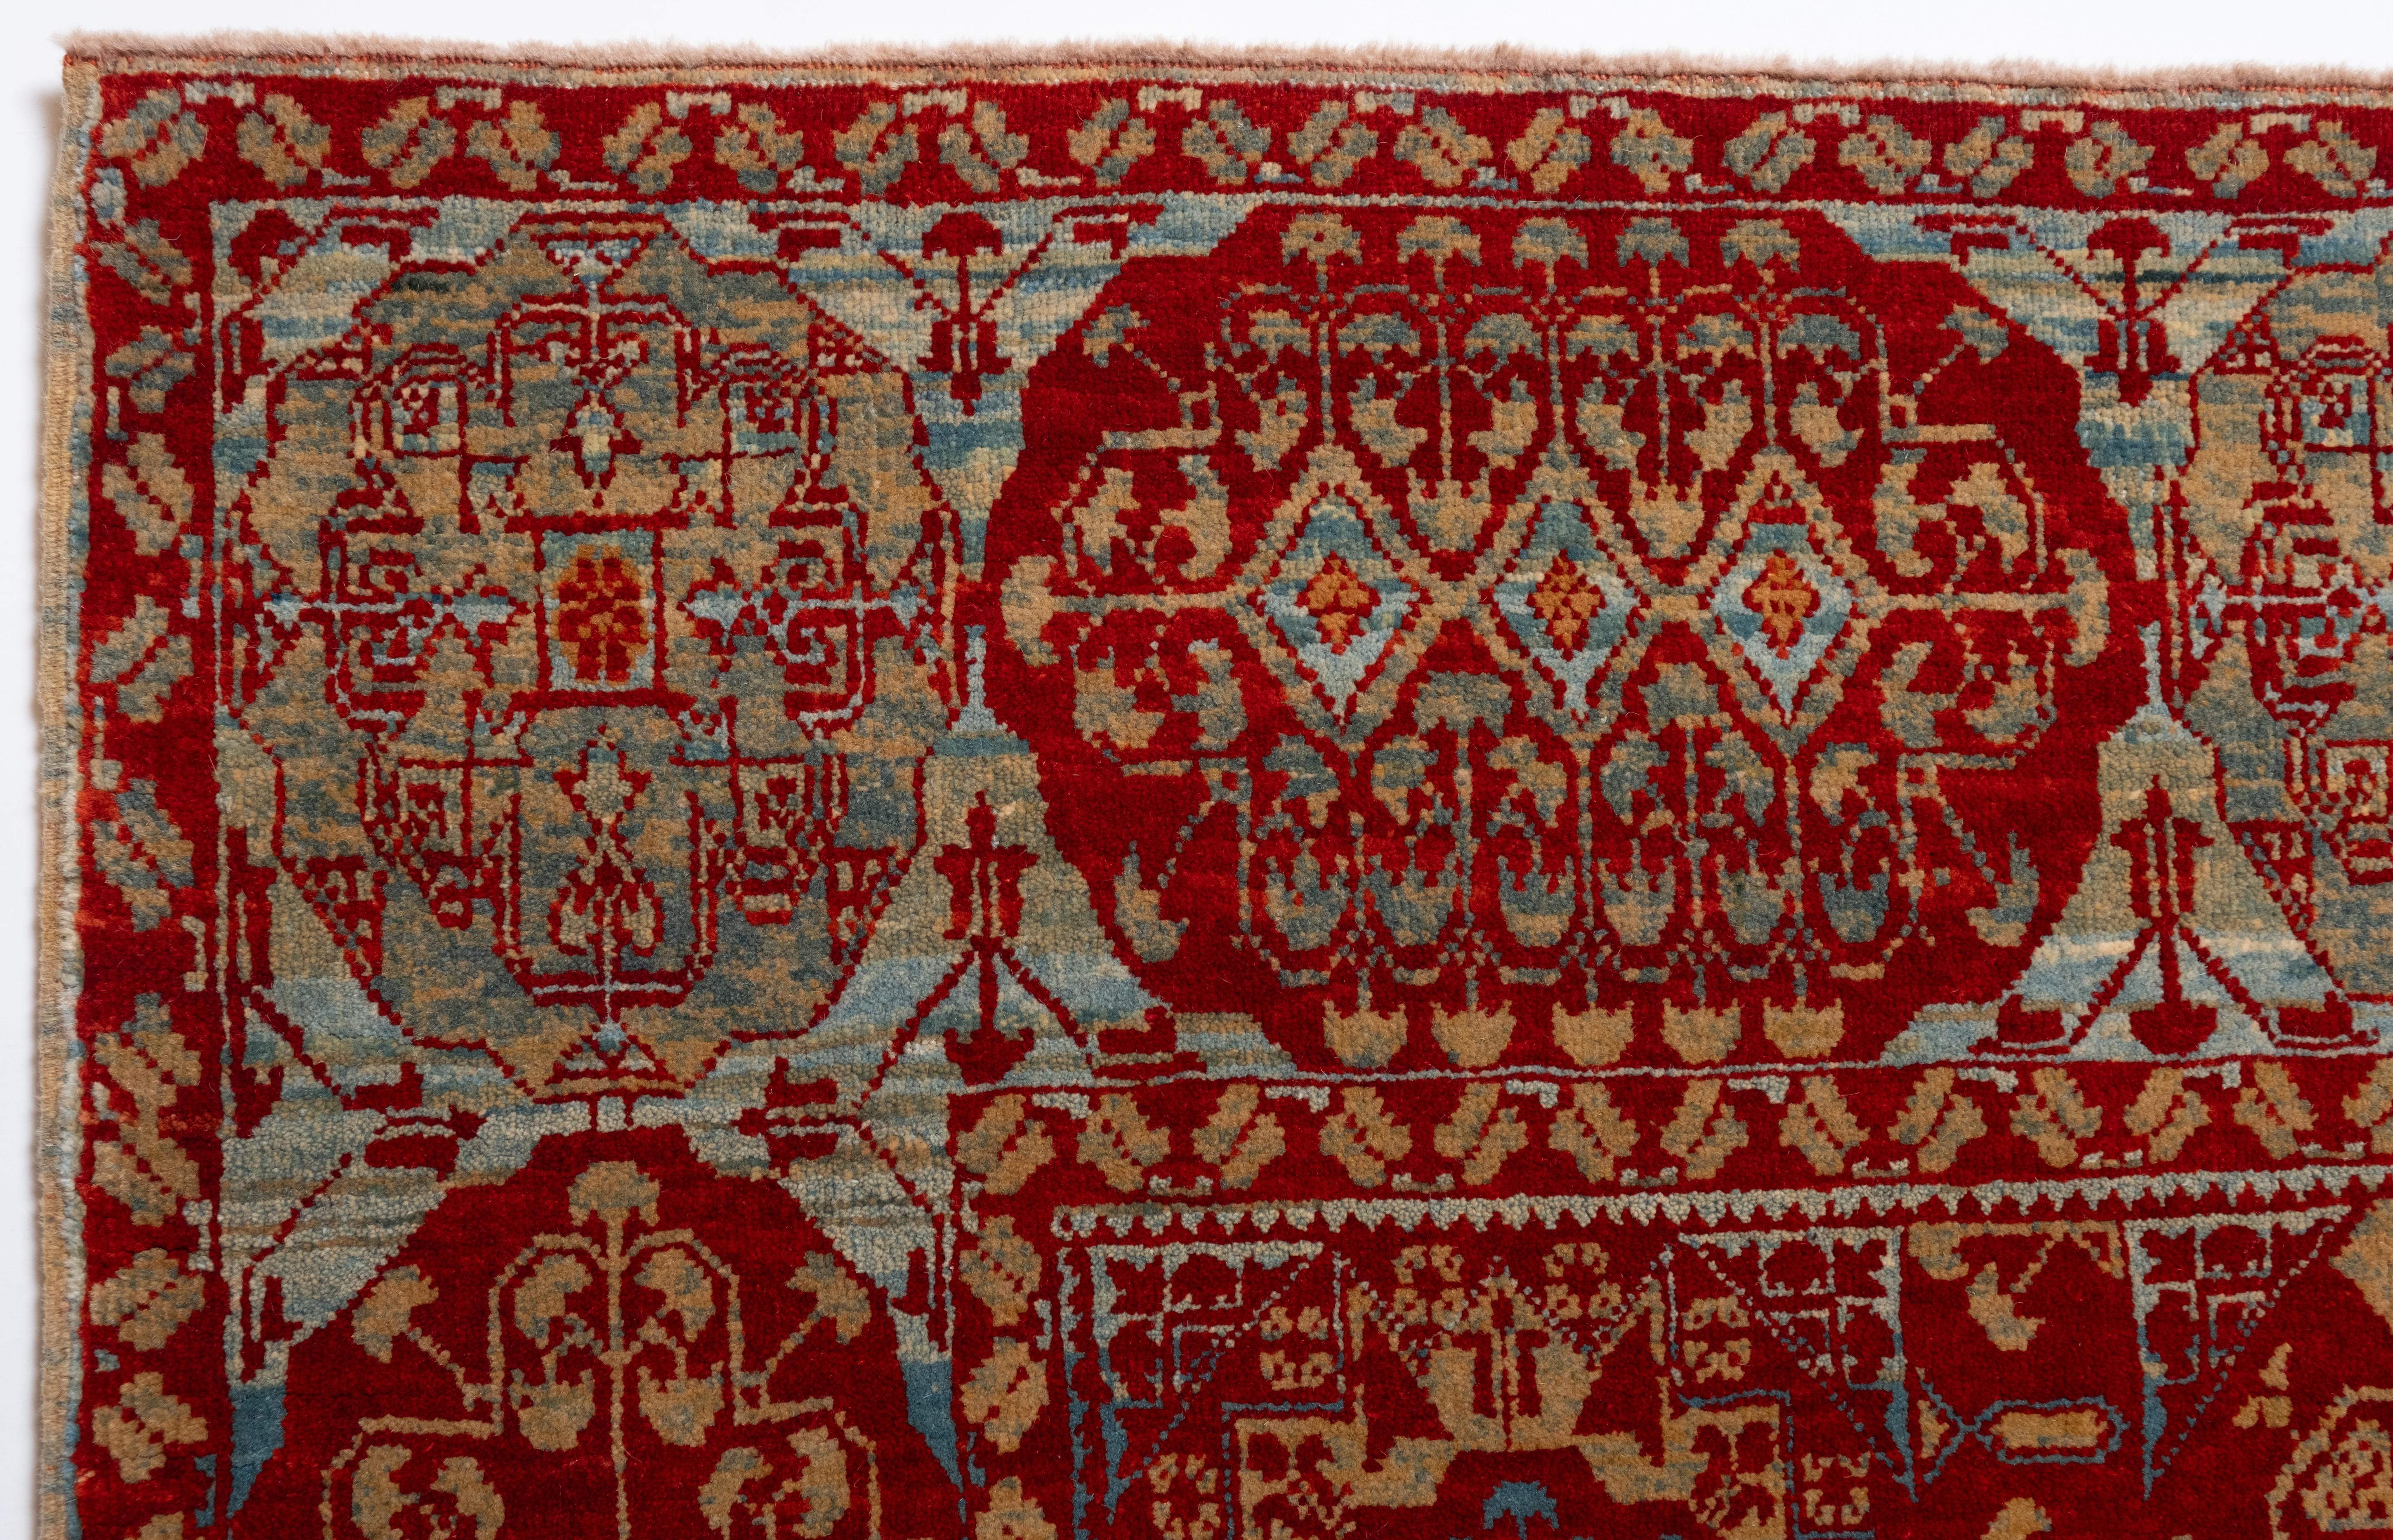 Die Quelle des Teppichs stammt aus dem Buch Renaissance of Islam, Art of the Mamluks, Esin Atil, Smithsonian Institution Press, Washington D.C., 1981 nr.125. Dies ist ein Teppich mit einem Bechermotiv, ein Teppich aus dem späten 15. Jahrhundert von